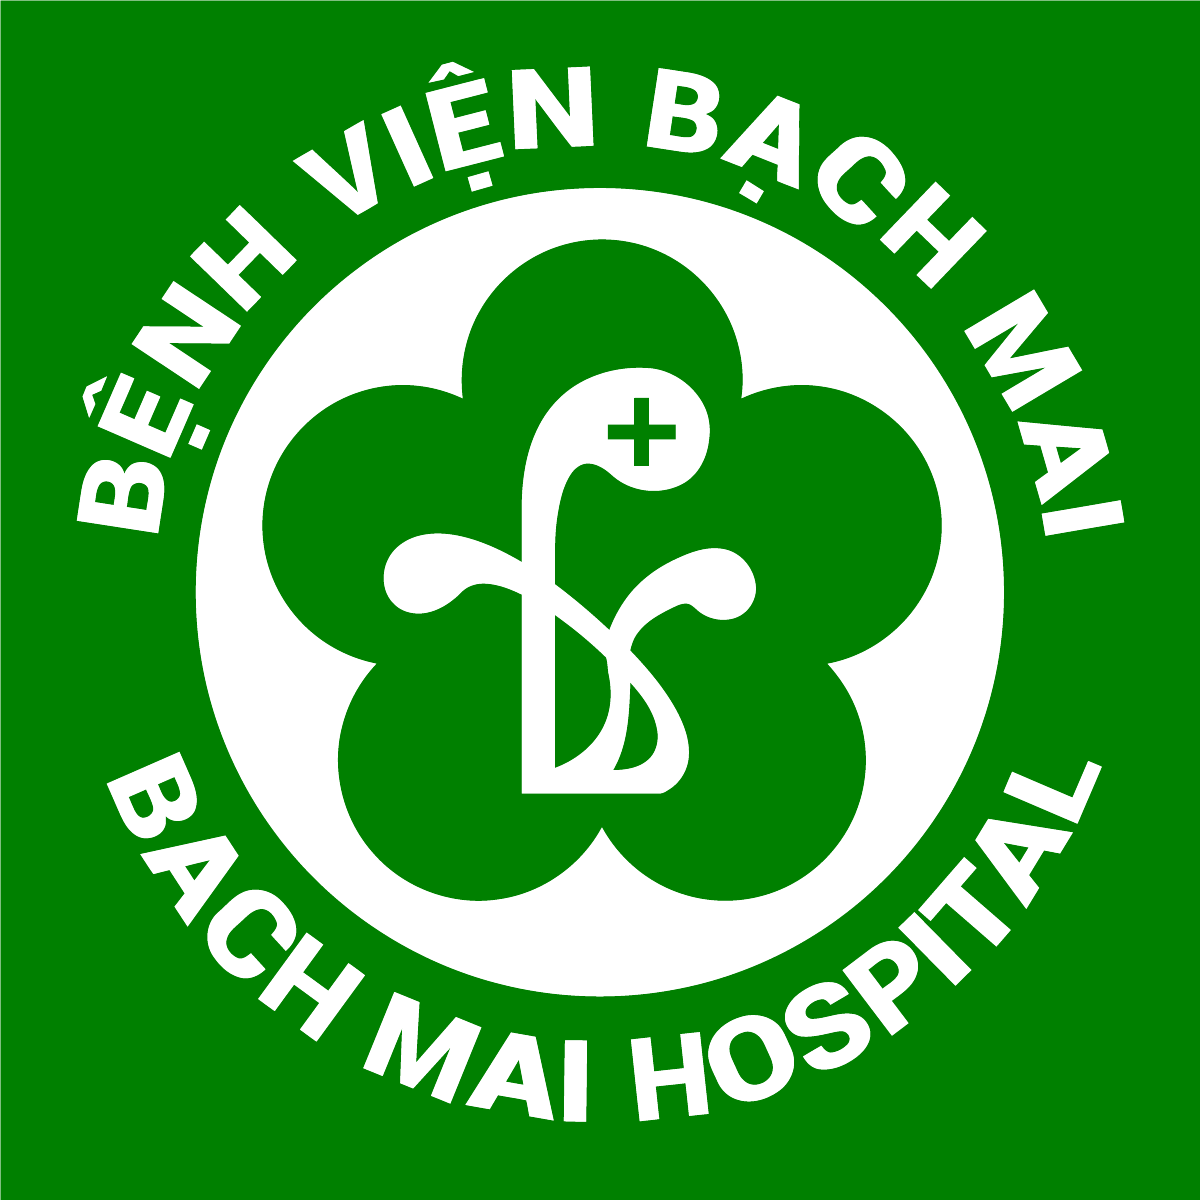 BACH MAI HOSPITAL